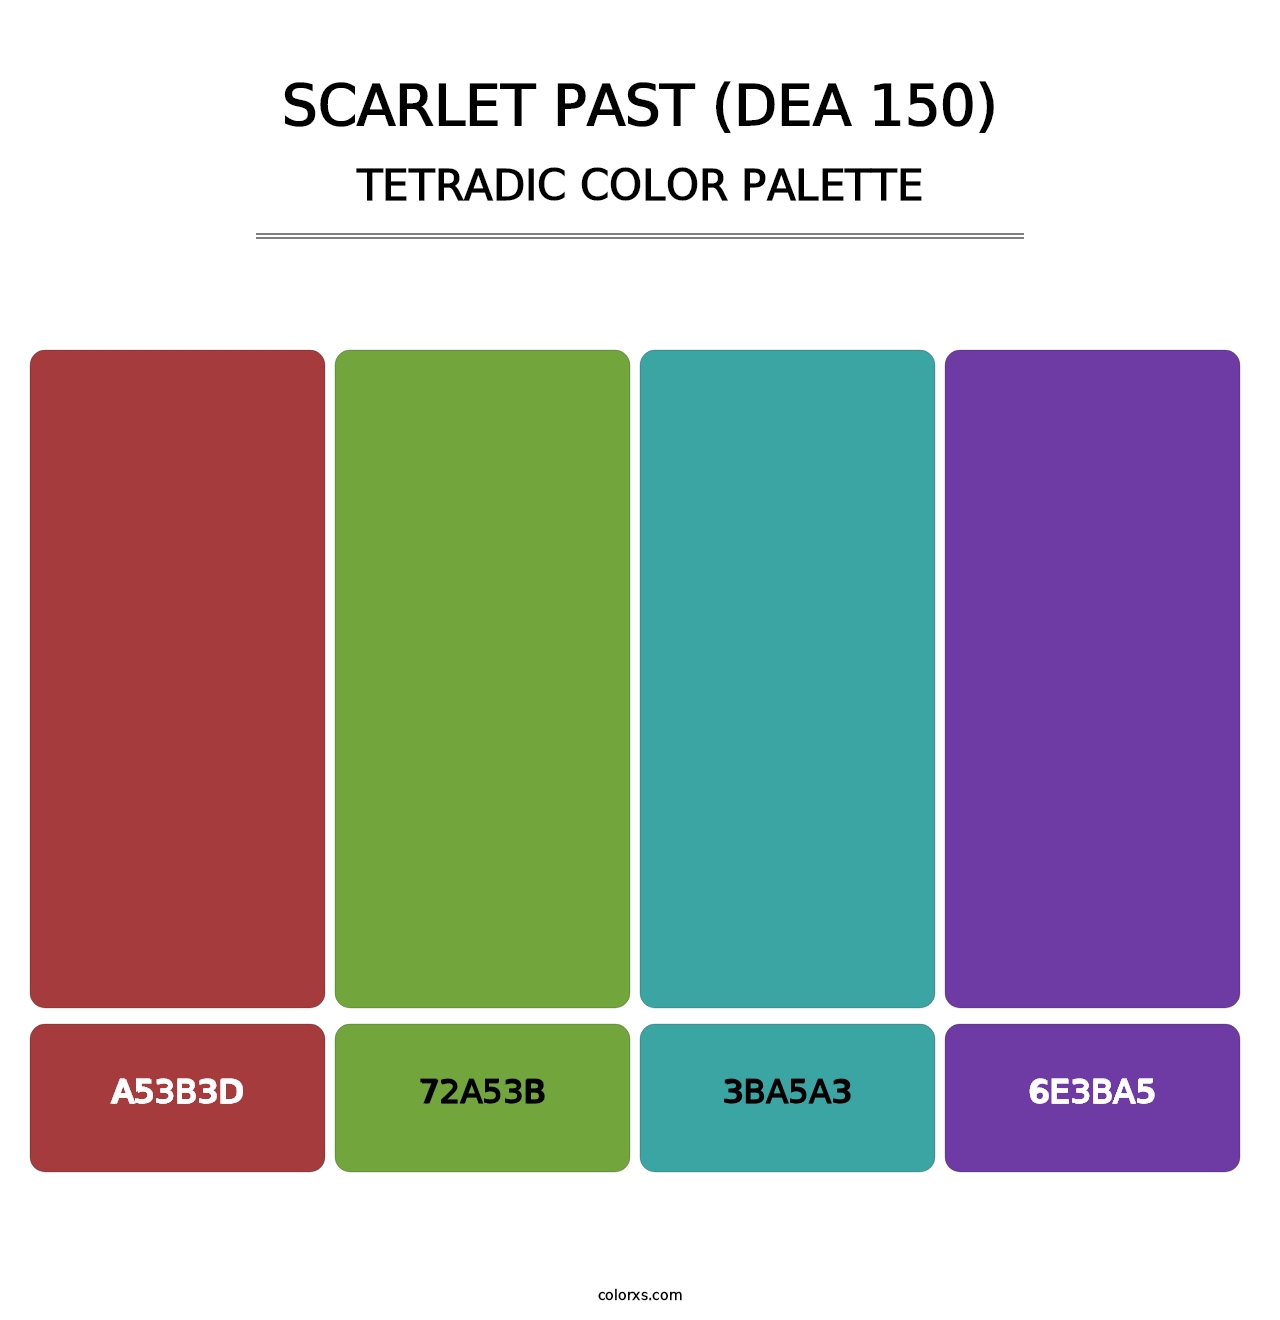 Scarlet Past (DEA 150) - Tetradic Color Palette